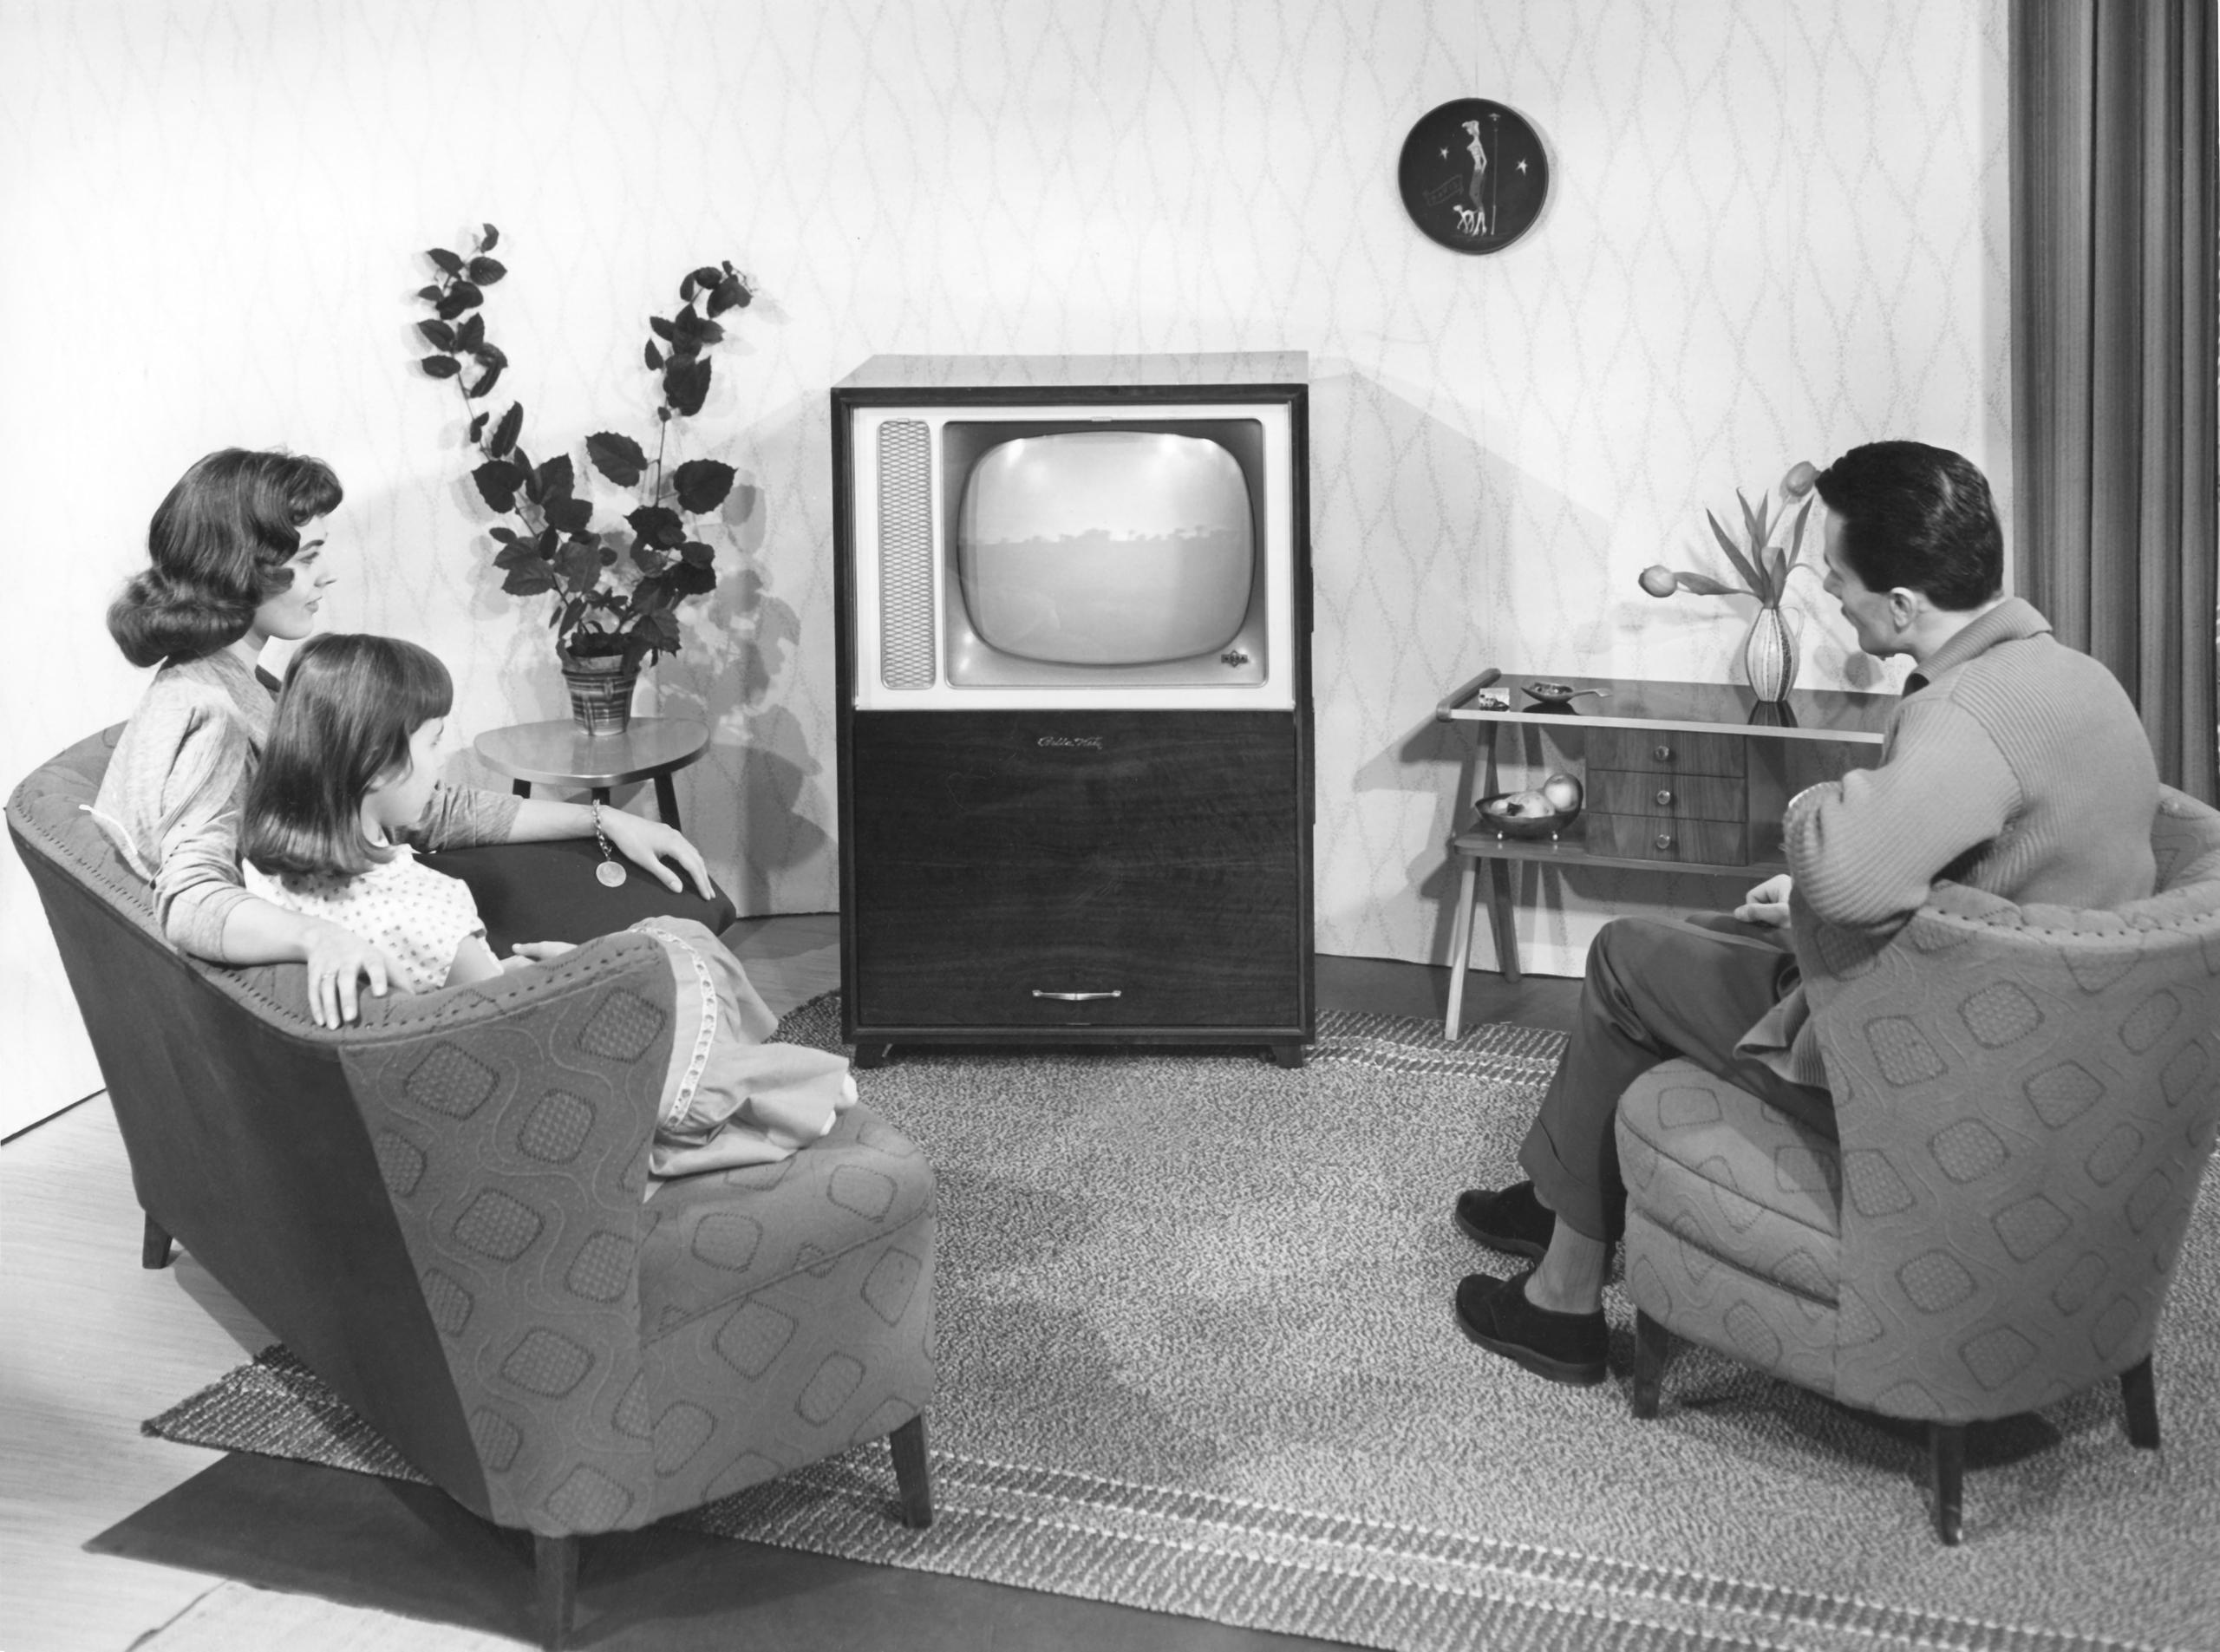 Foto in b/n di famiglia in soggiorno anni 60, con padre, madre e figlia seduti sul divano e rivolti verso il televisore